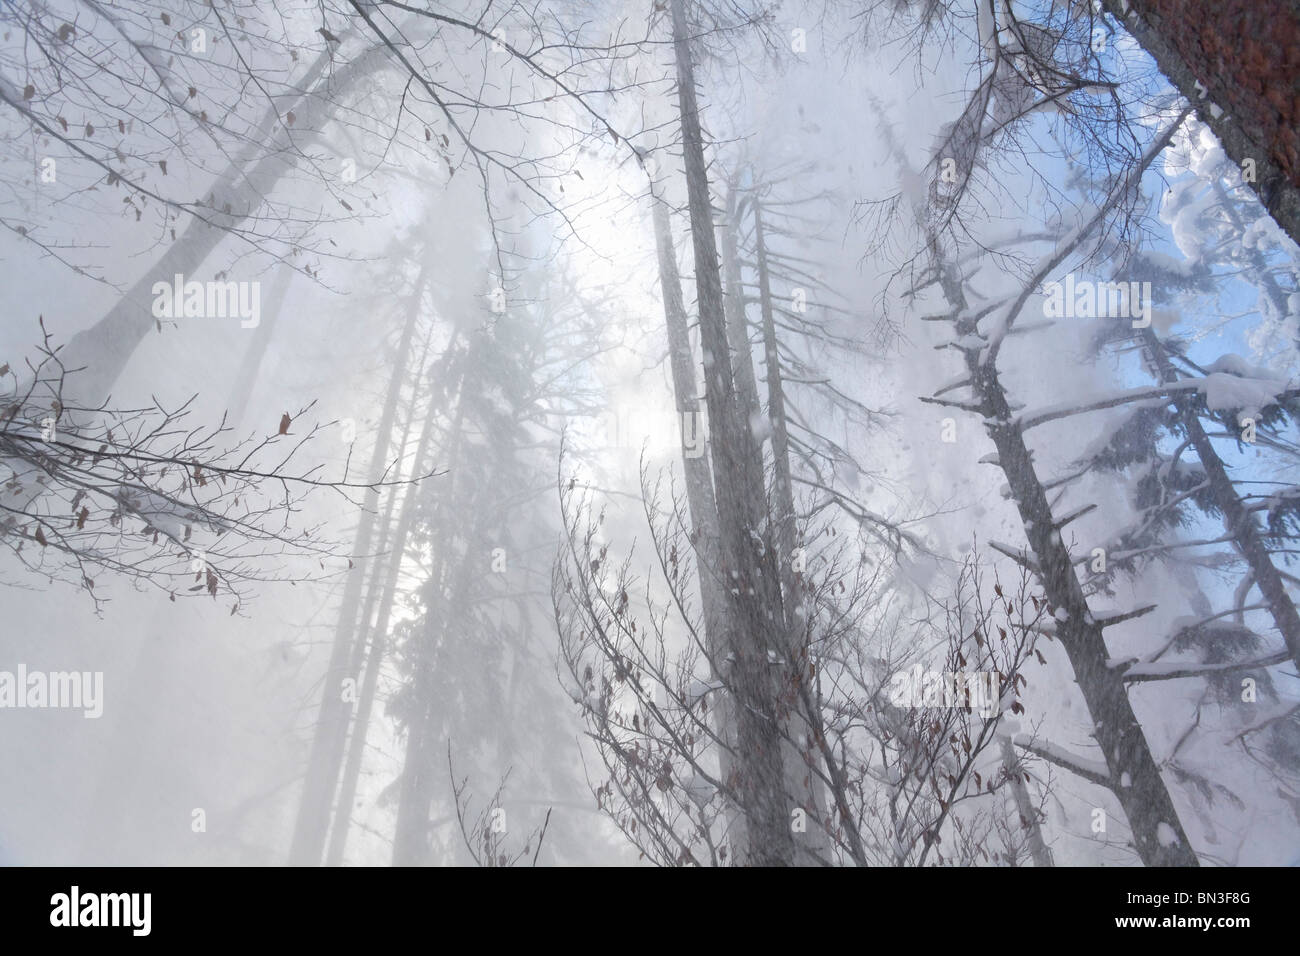 Snow flurry dans une forêt, Anger, low angle view Banque D'Images